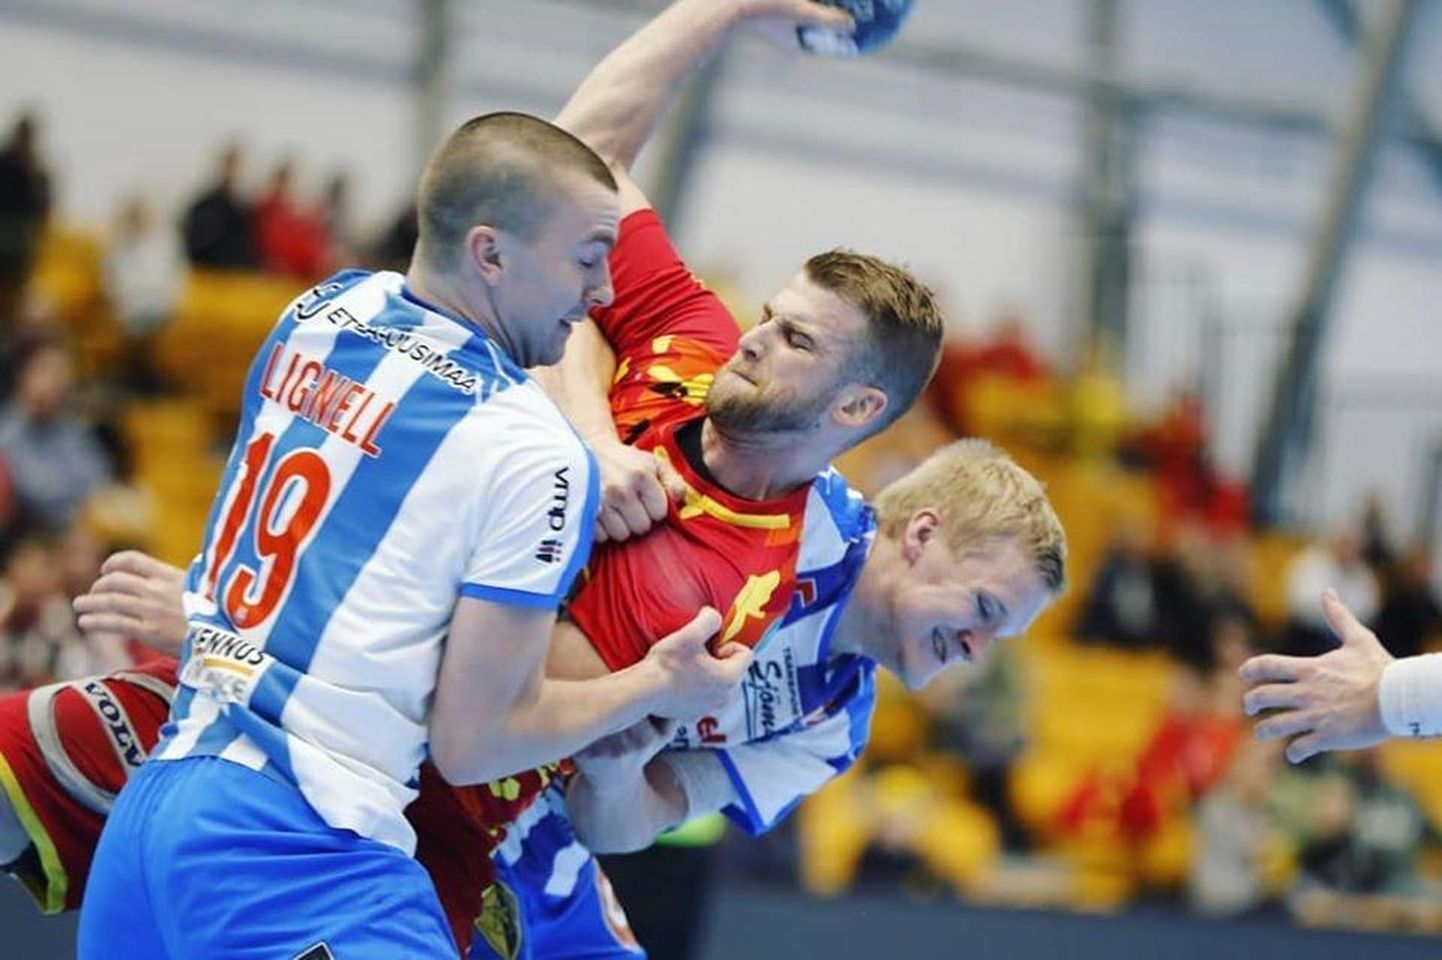 Soome viimaste aastate tituleerituim käsipallimeeskond Riihimäe Cocks jääb selle aasta karikafinaalist eemale. Karjaa BK-46 (sinivalges) pallurid panid paremuse "kukkede" vastu poolfinaalis maksma kahe lisaaja järel.